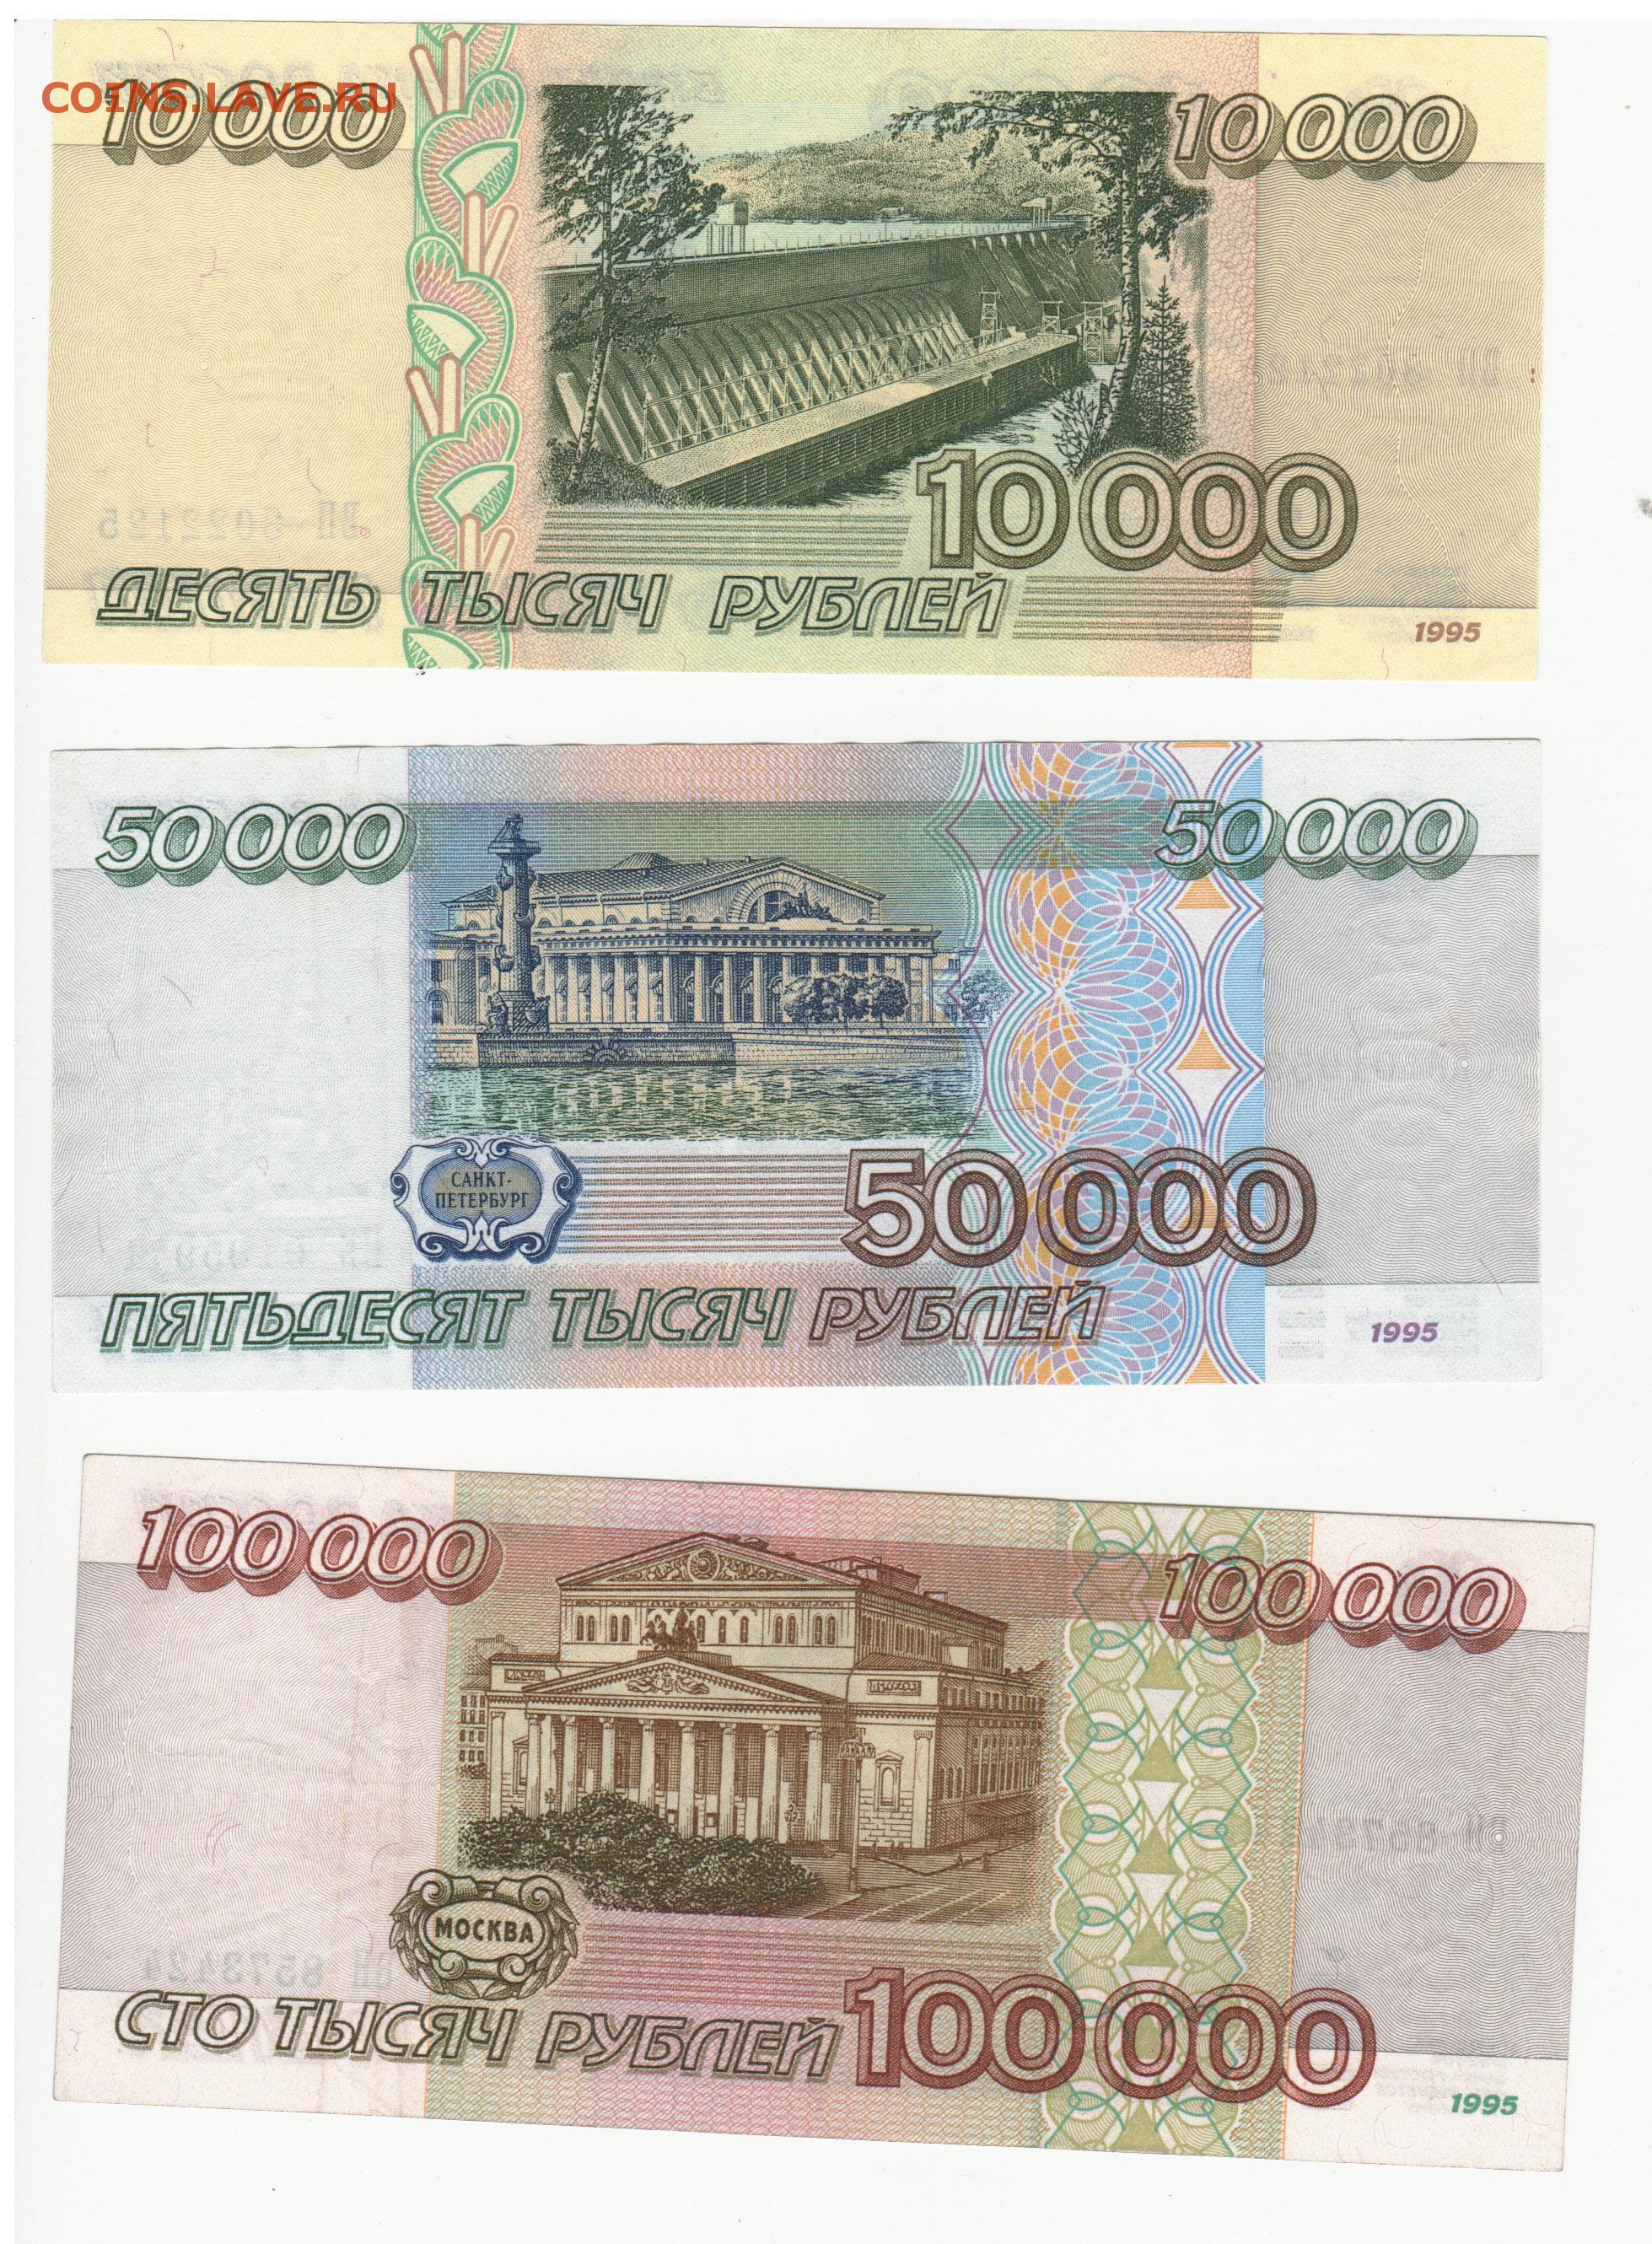 100.000 000. 100000 Рублей 1995 года. Банкнота 100000 рублей 1995. 50 000 Рублей купюра 1995 года. СТО тысяч рублей купюра.